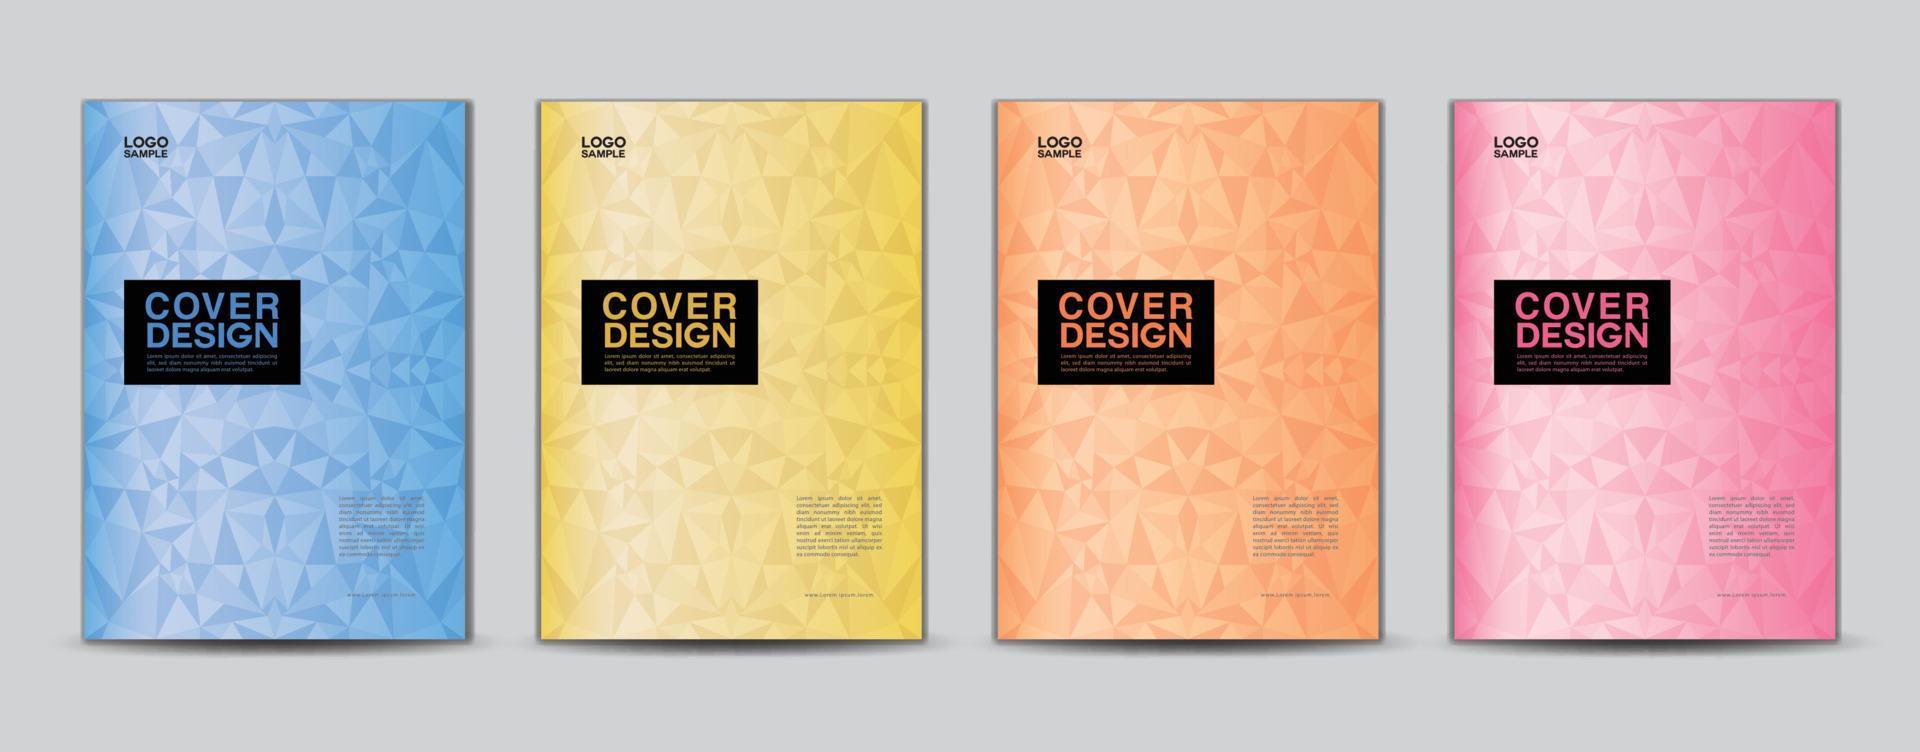 vecteur de modèle de conception de couverture de polygone, conception de couverture de rapport annuel d'entreprise, modèle de flyer, couverture de brochure, livre, présentation